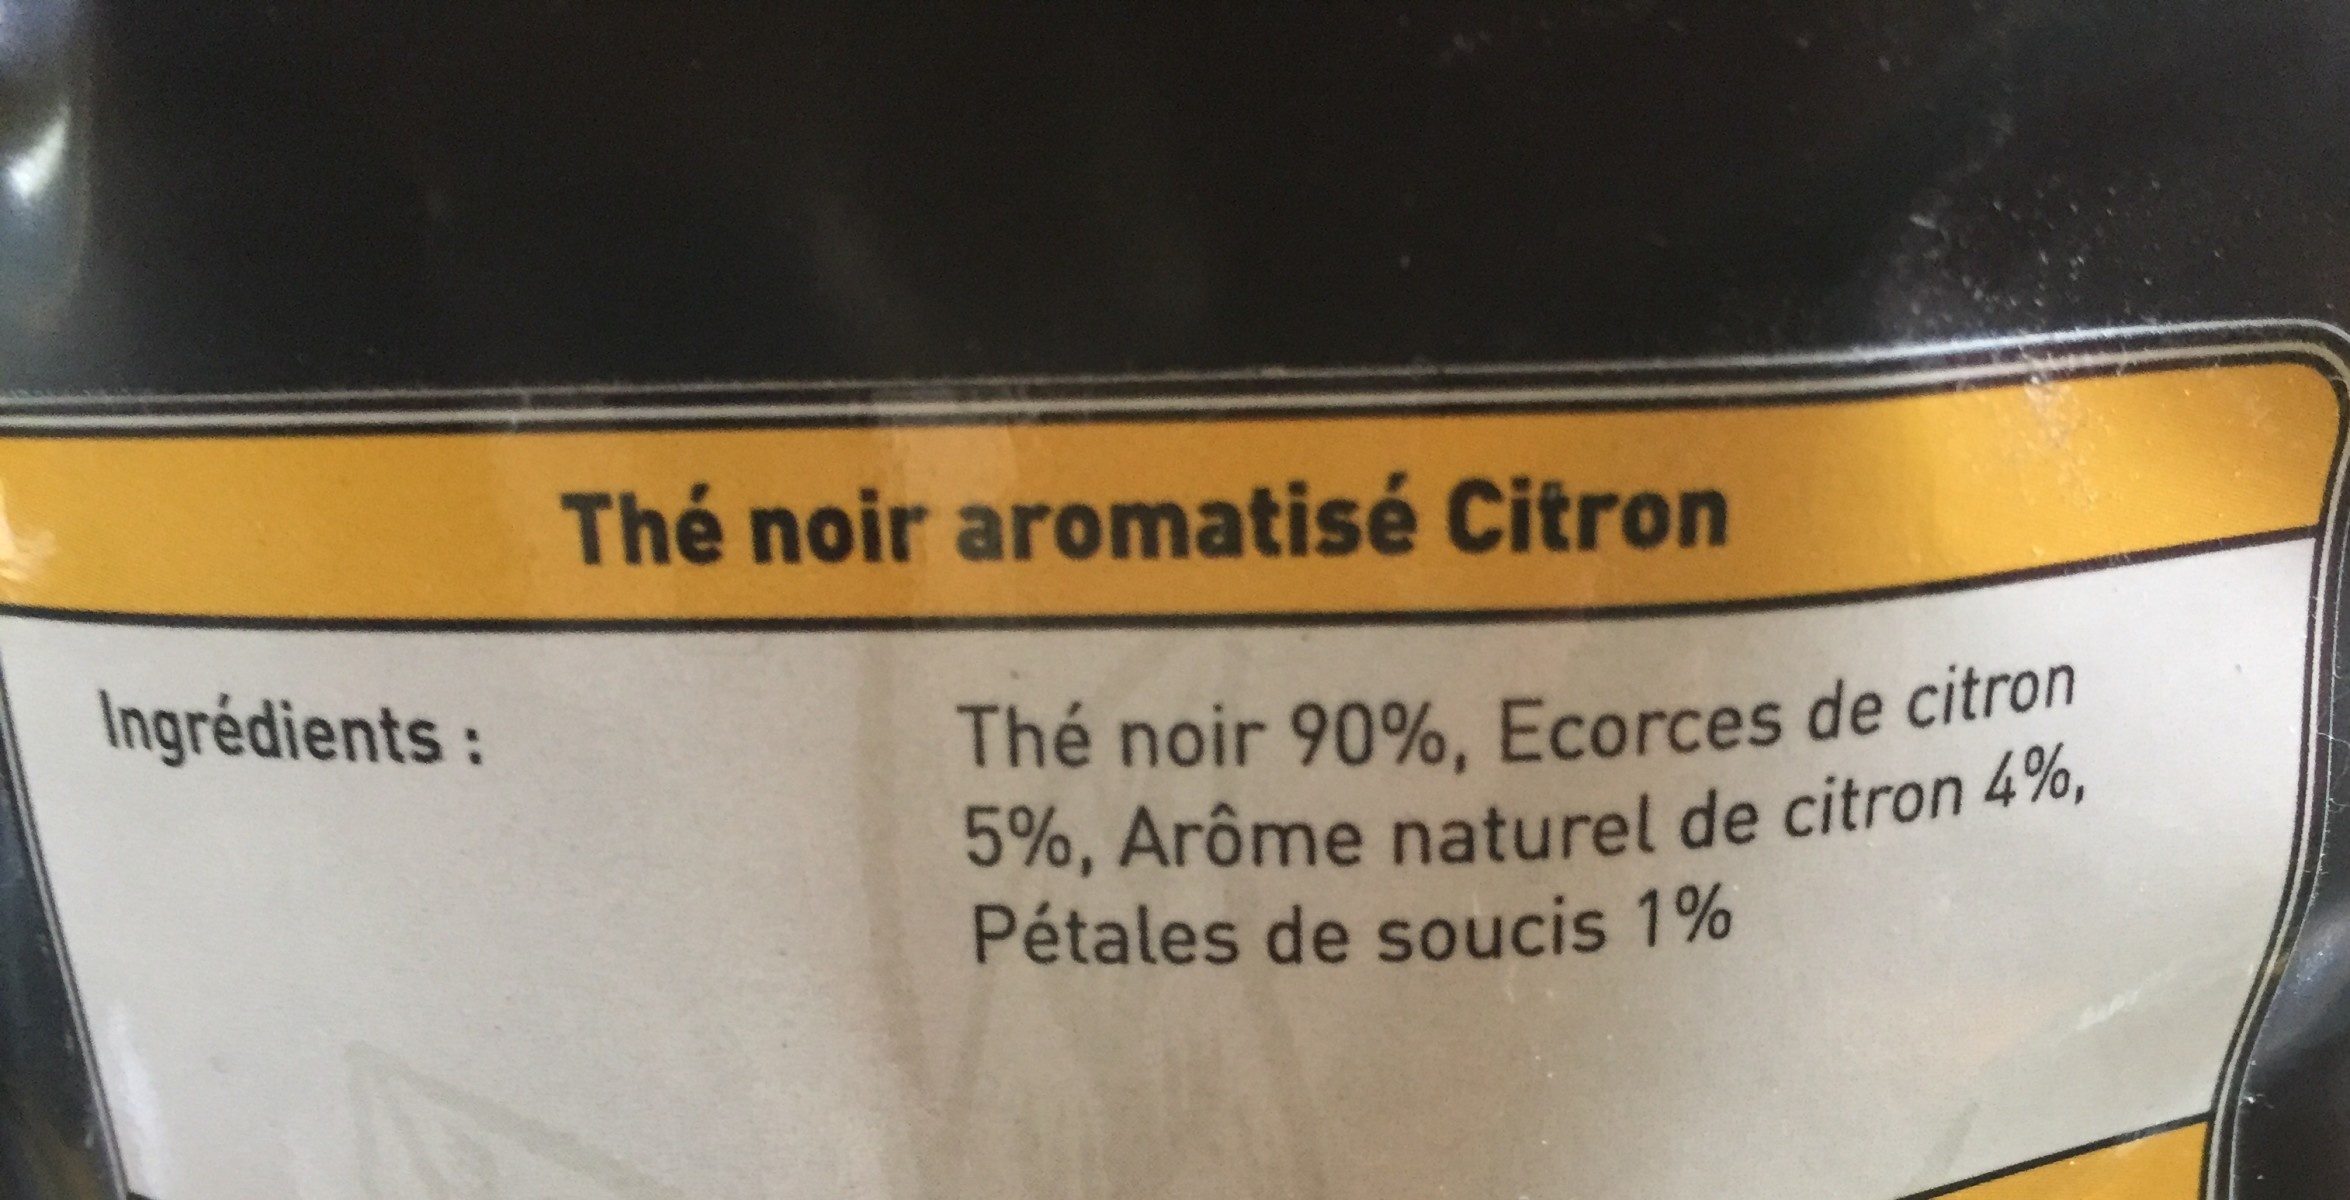 Thé noir aromatisé Citron - Ingredients - fr